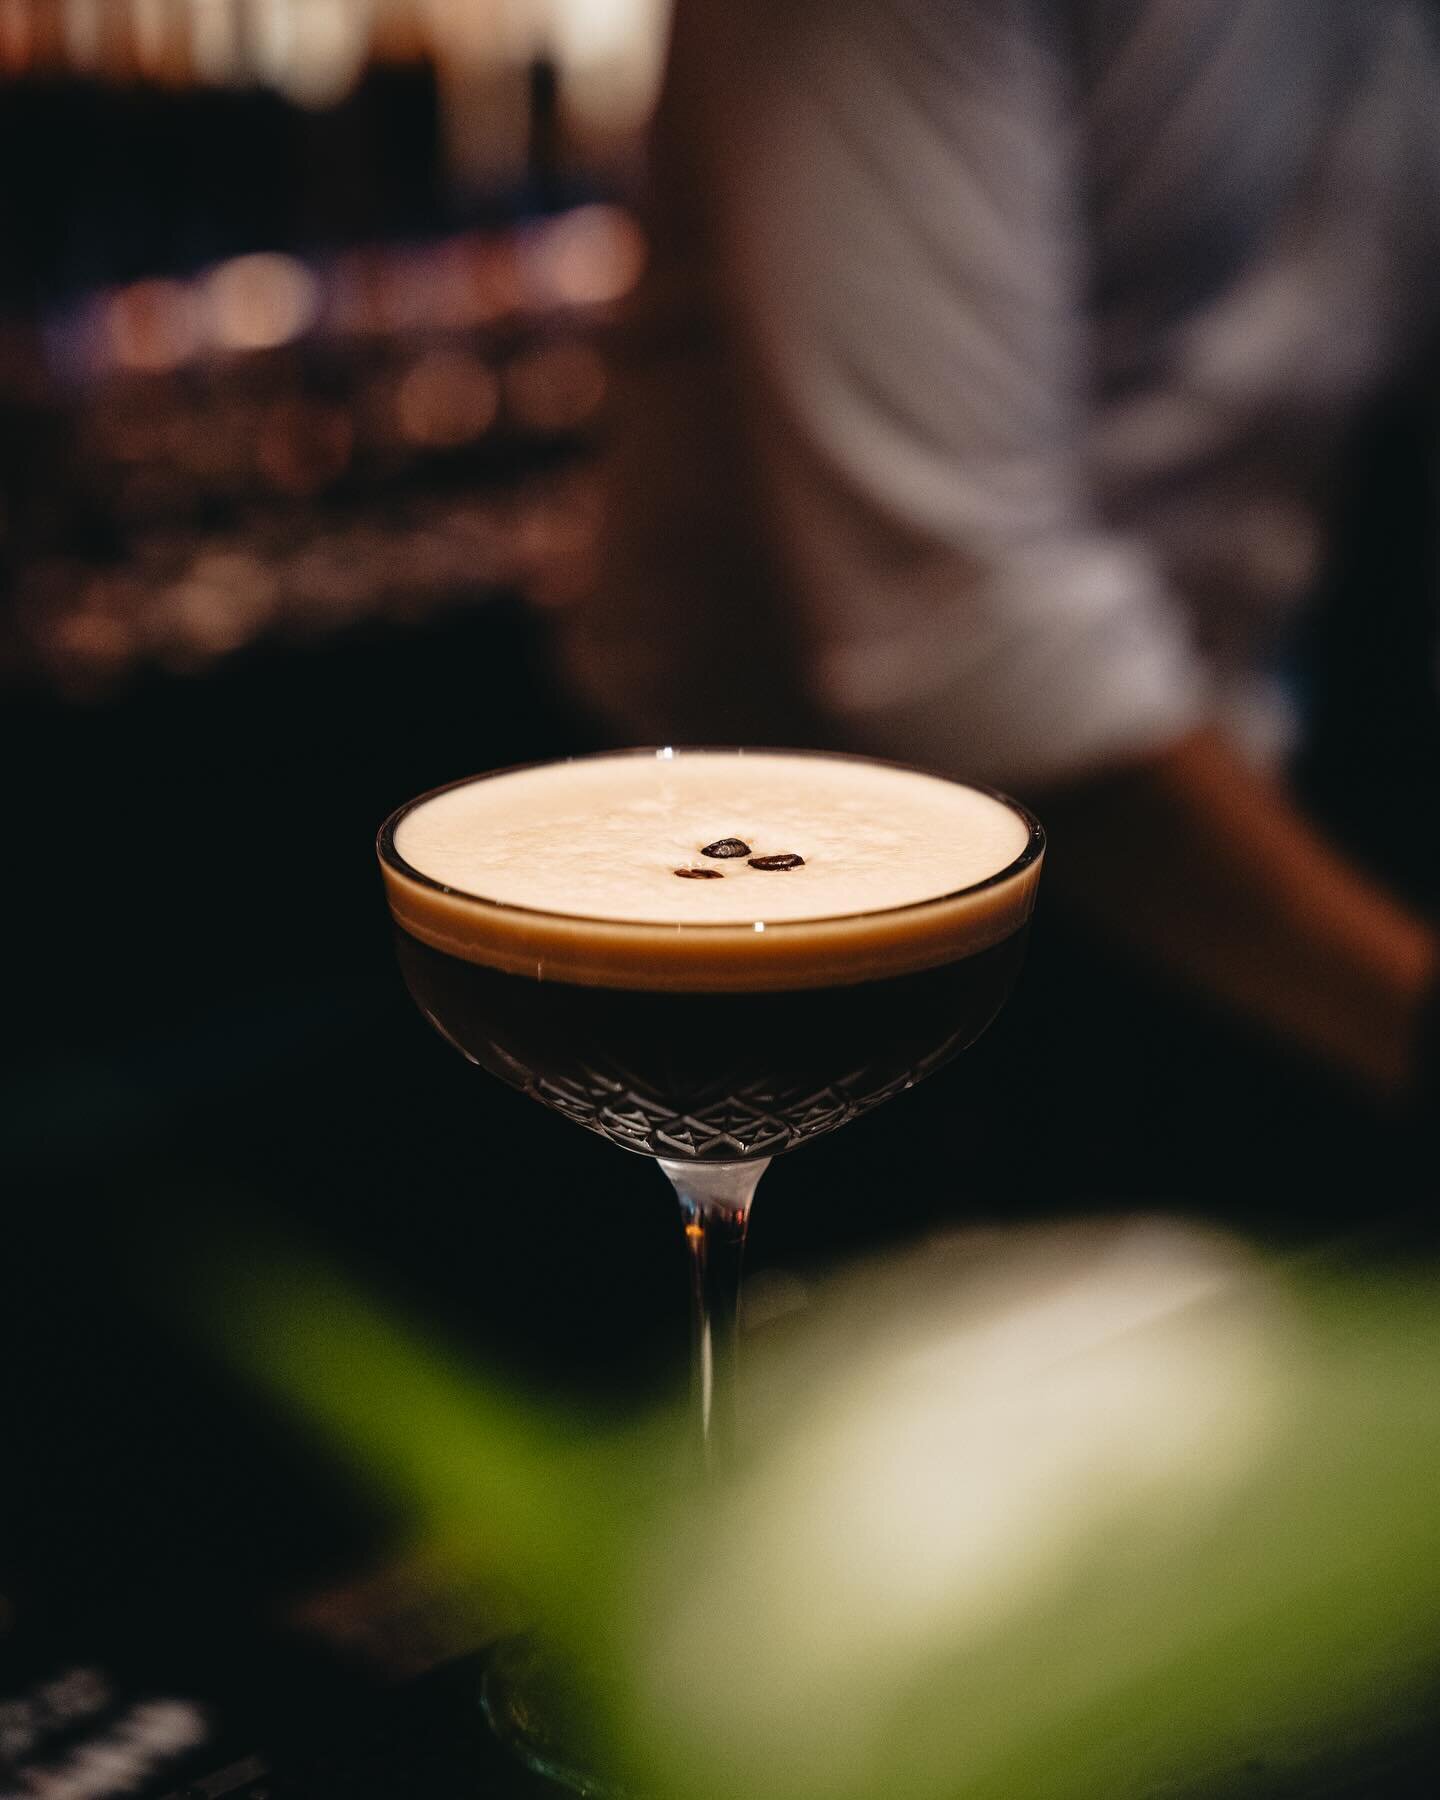 Mix it real good 🤩 Unser Espresso Martini 🍸 
Wie sehr freut Ihr euch eigentlich schon auf die ersten Cocktails auf unserer Terasse 🫠?
_____
#cubo #cubonegro #mainz #cocktails #espressomartini #martini #cocktailsofinstagram